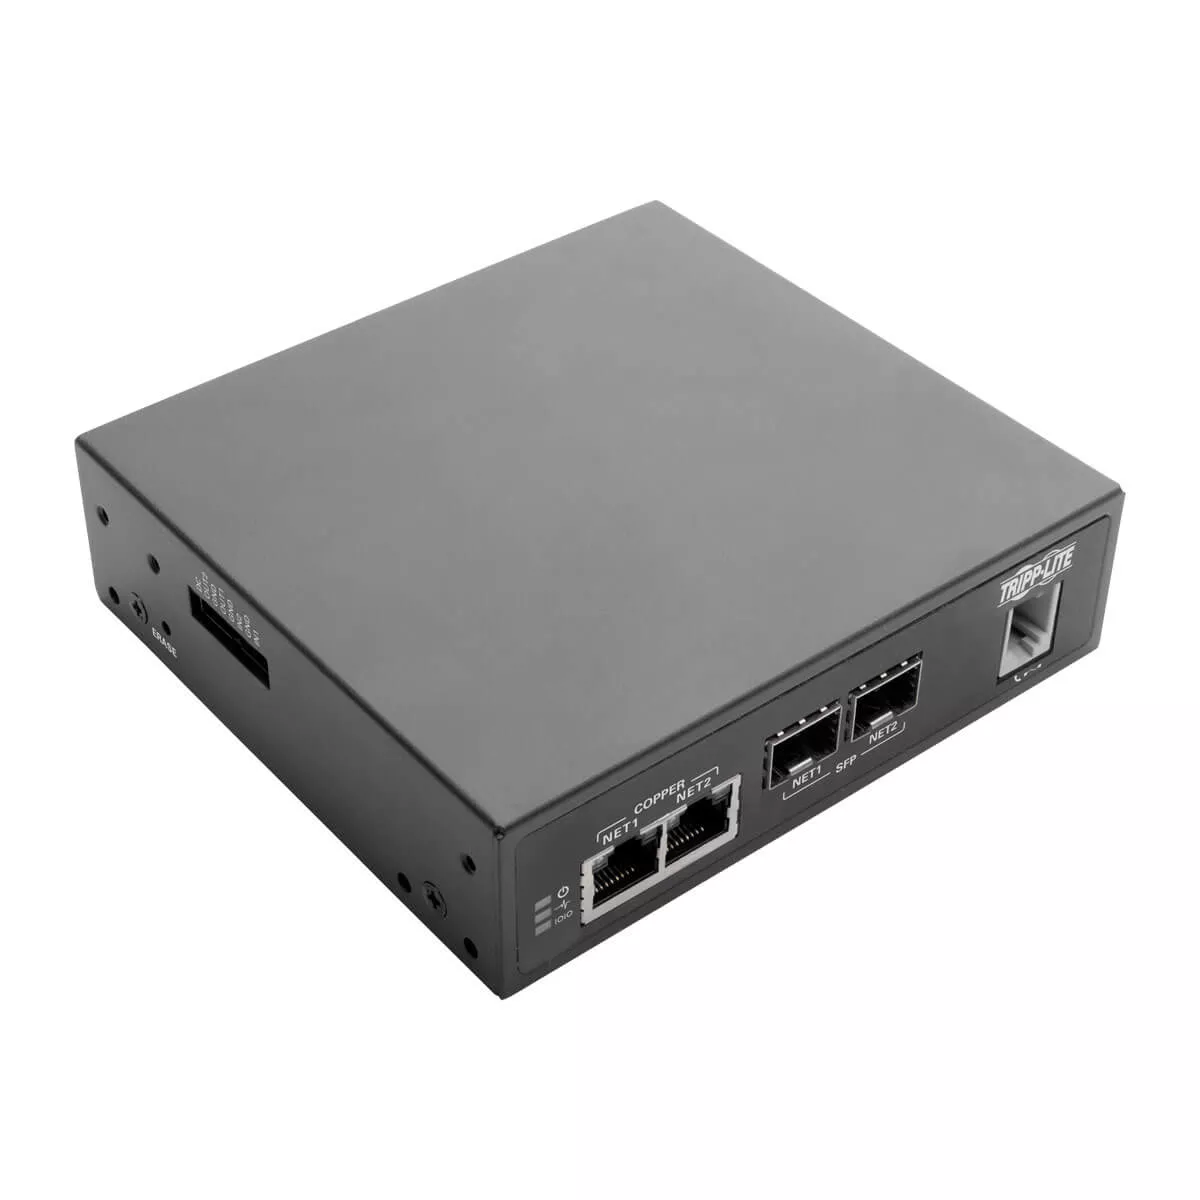 Achat Accessoire Réseau EATON TRIPPLITE 8-Port Console Server with Built-In Modem sur hello RSE